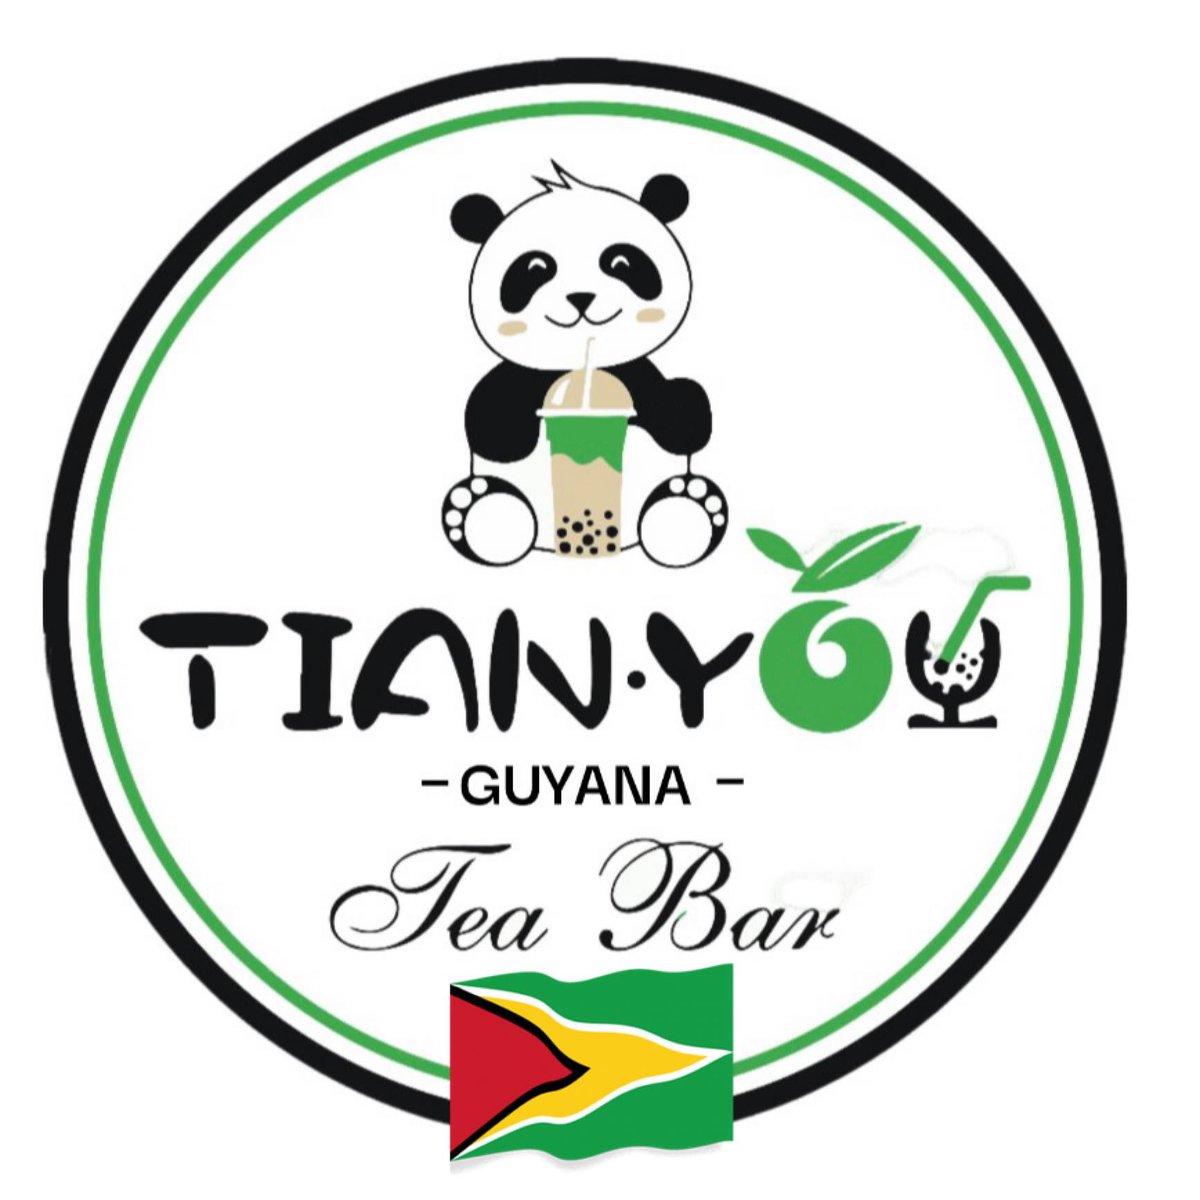 TianYou Guyana